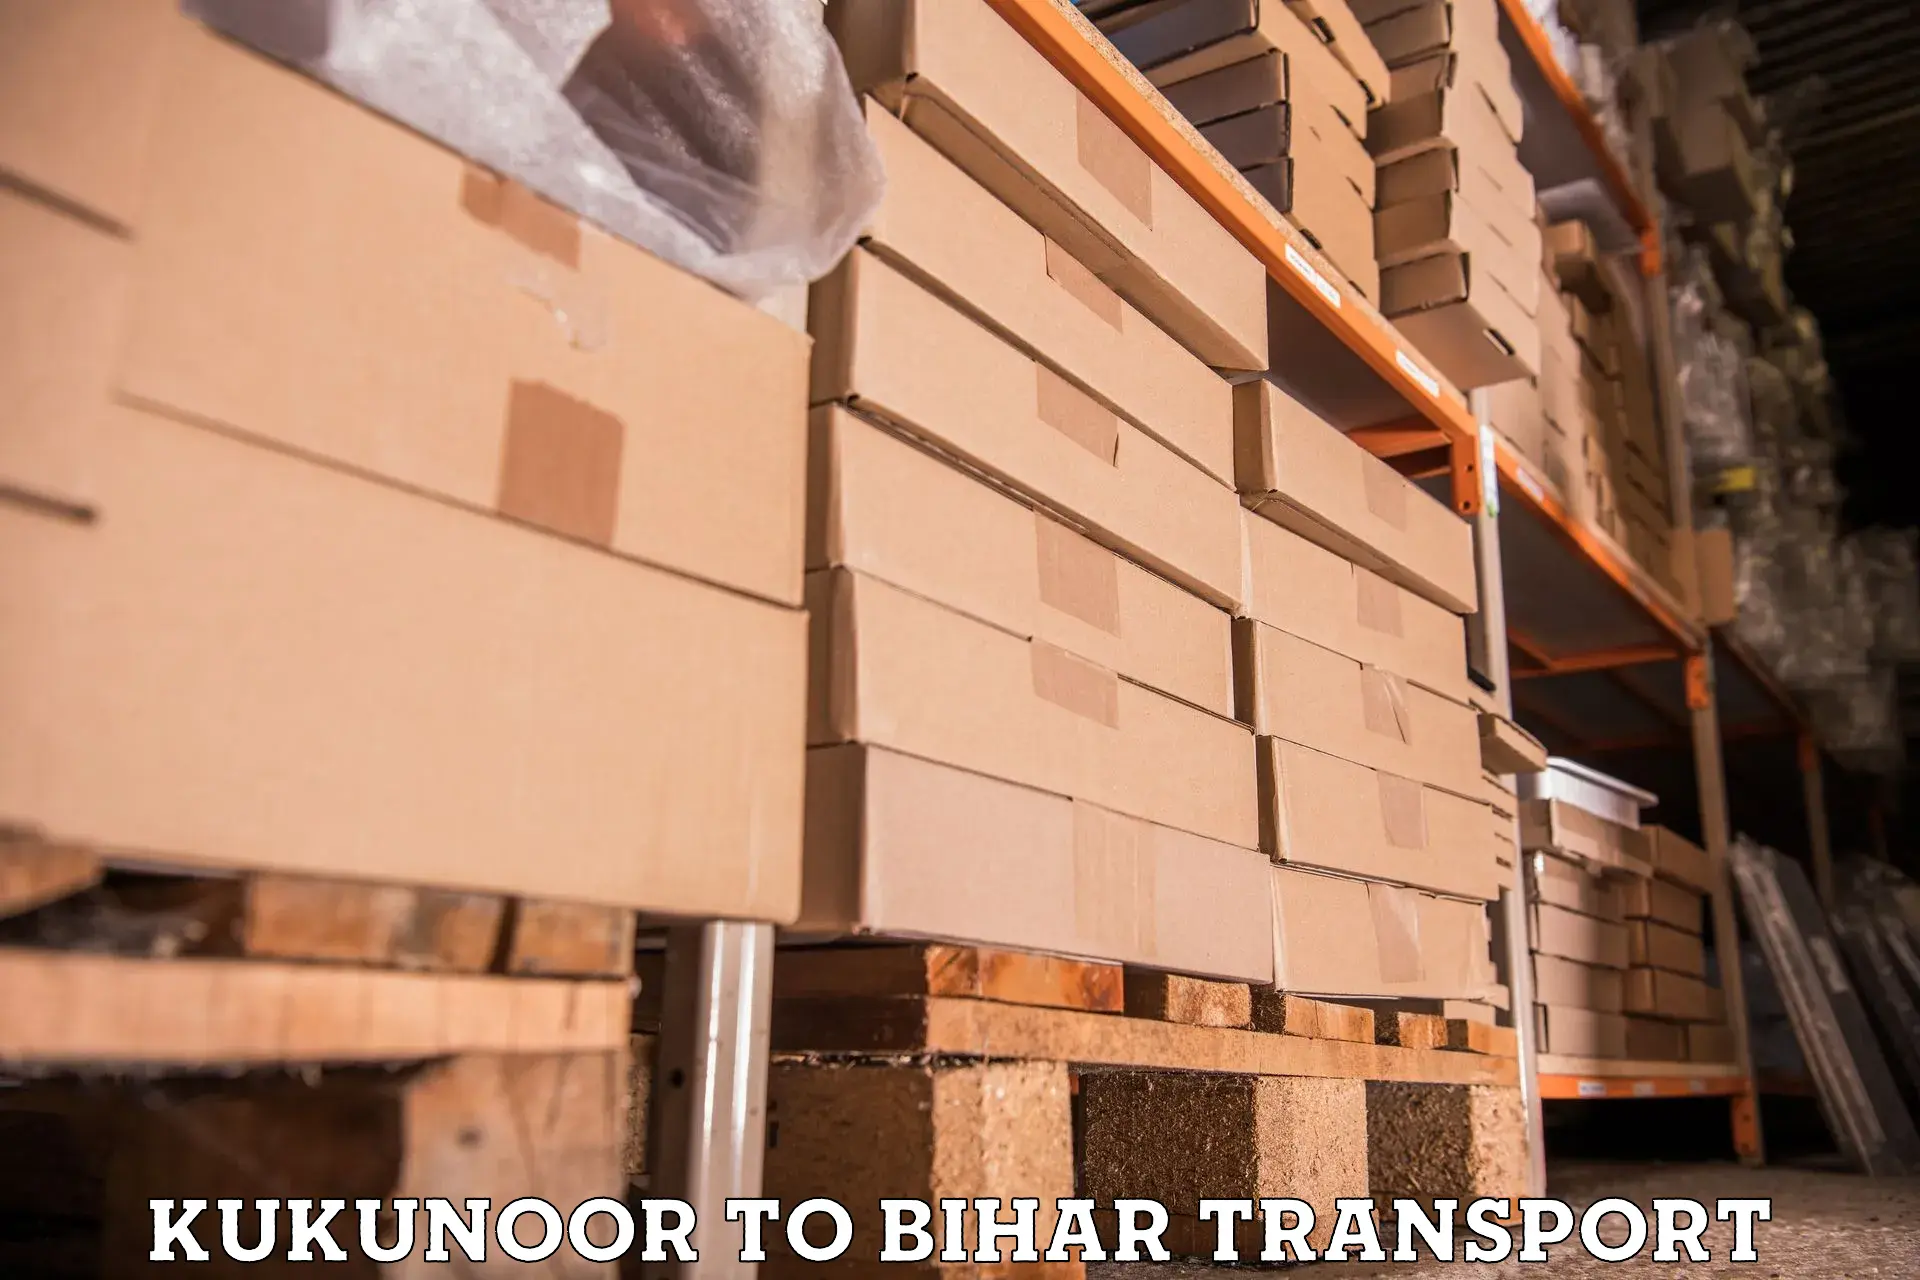 Interstate transport services Kukunoor to Bihar